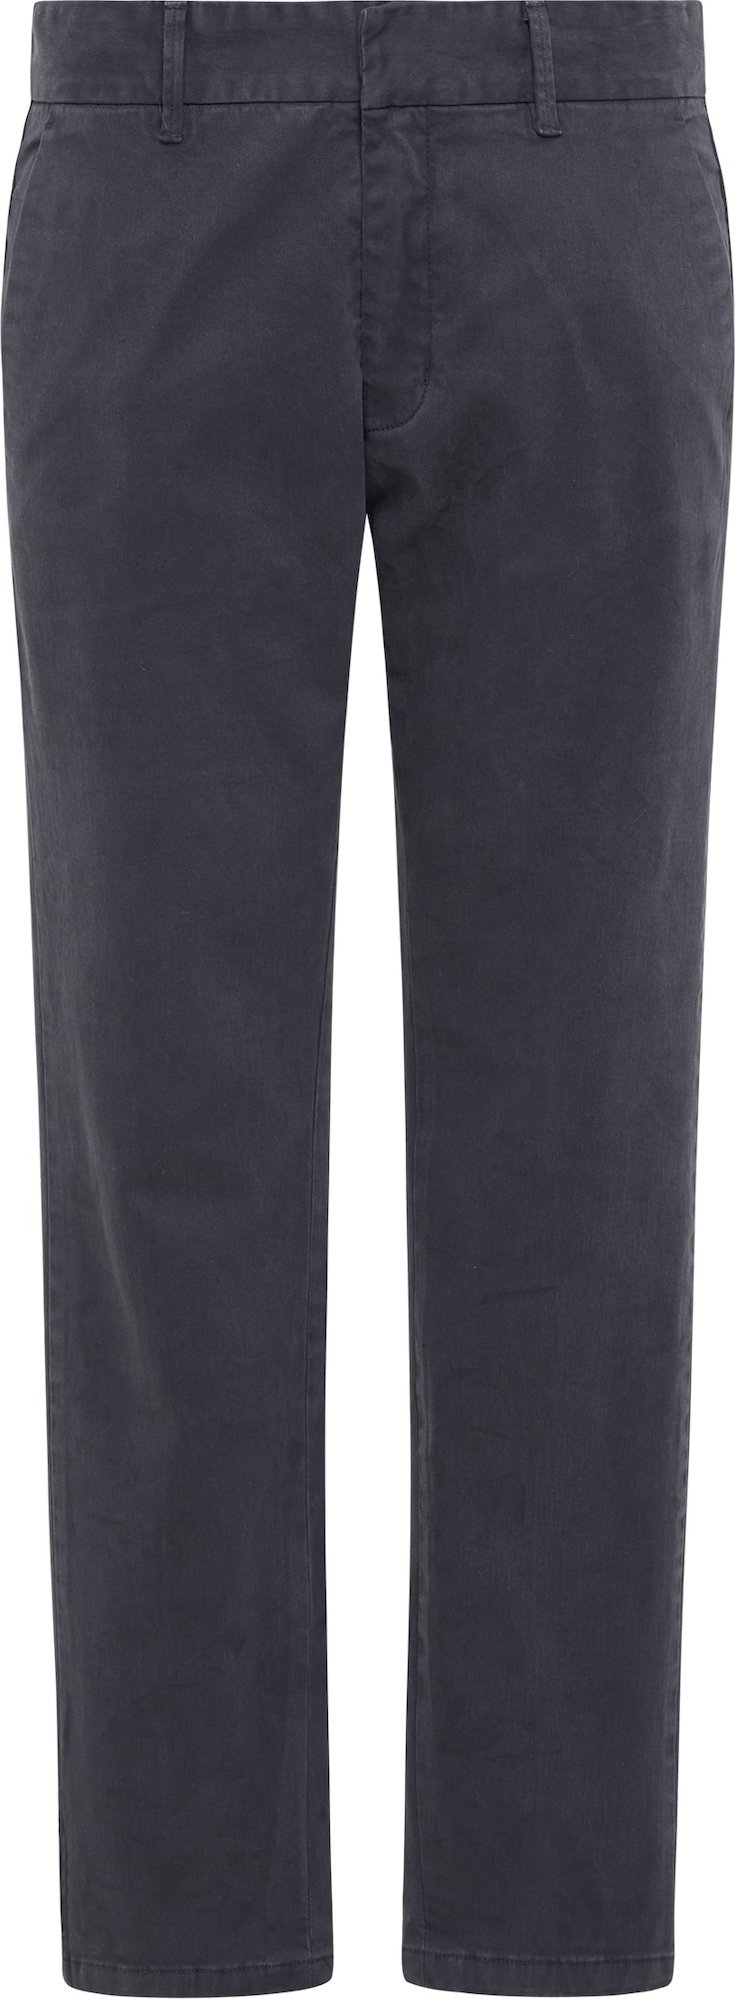 DreiMaster Vintage Chino kalhoty marine modrá